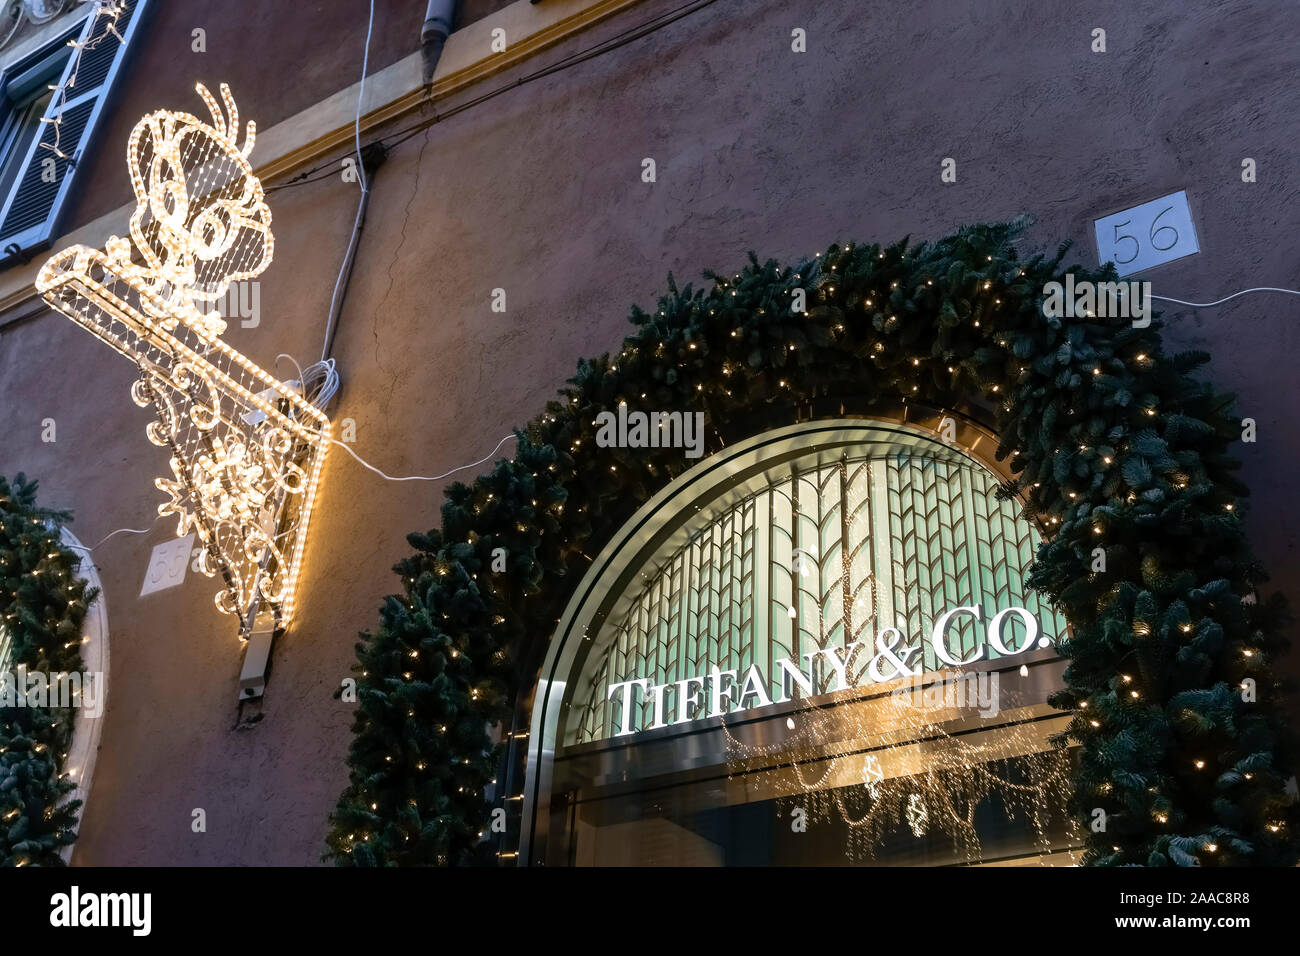 Negozio Tiffany & Co. In Via condotti Roma, porta del negozio. Boutique di  moda. Shopping di lusso. Roma Natale. Italia, Europa, UE Foto stock - Alamy